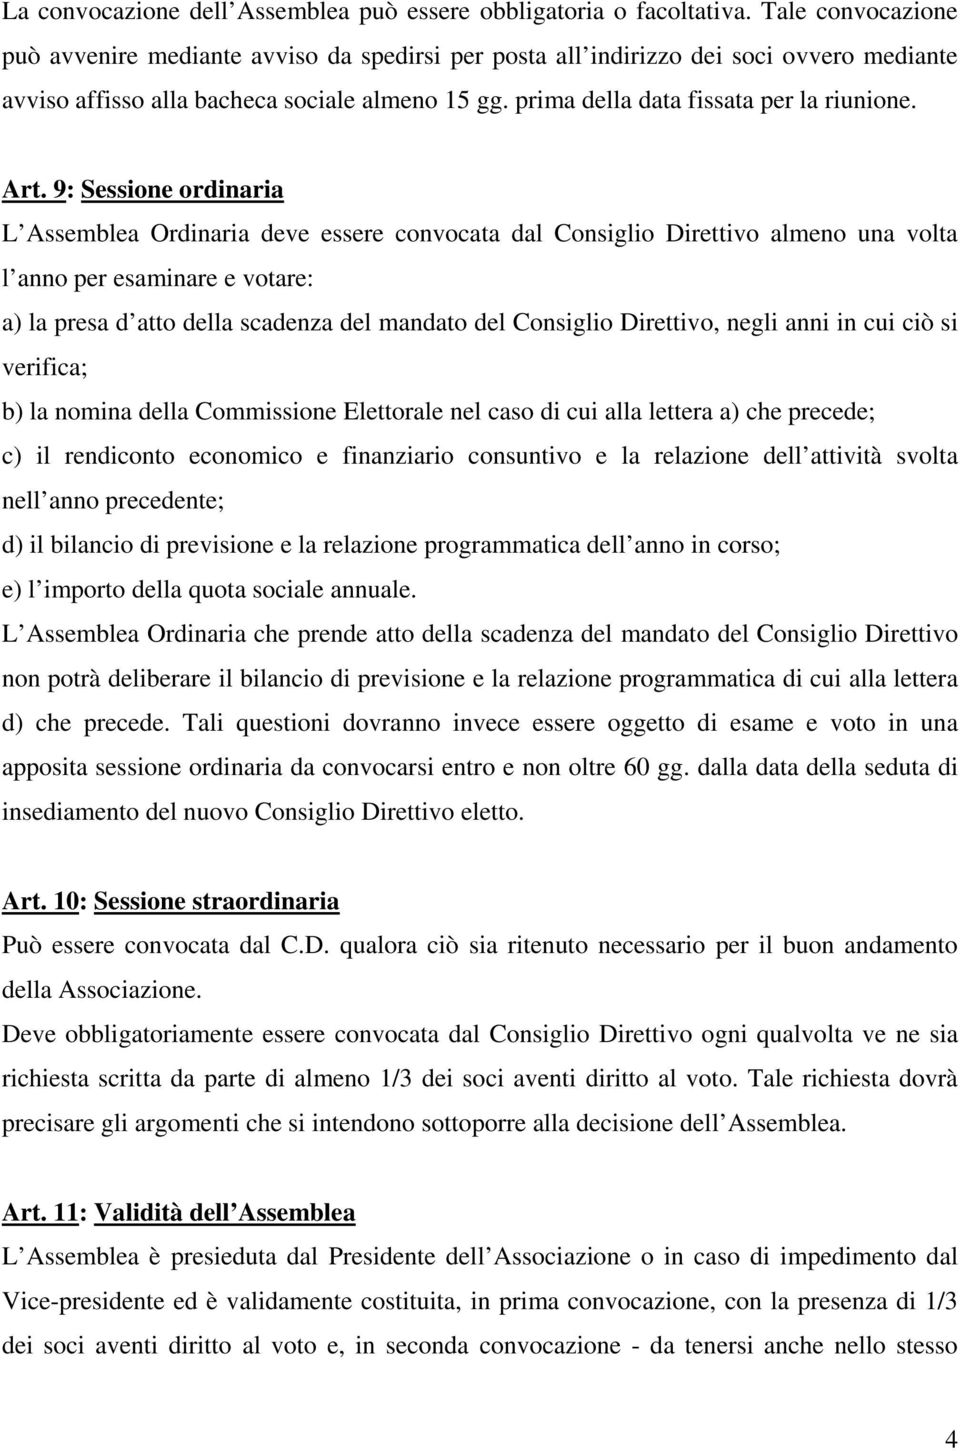 Art. 9: Sessione ordinaria L Assemblea Ordinaria deve essere convocata dal Consiglio Direttivo almeno una volta l anno per esaminare e votare: a) la presa d atto della scadenza del mandato del